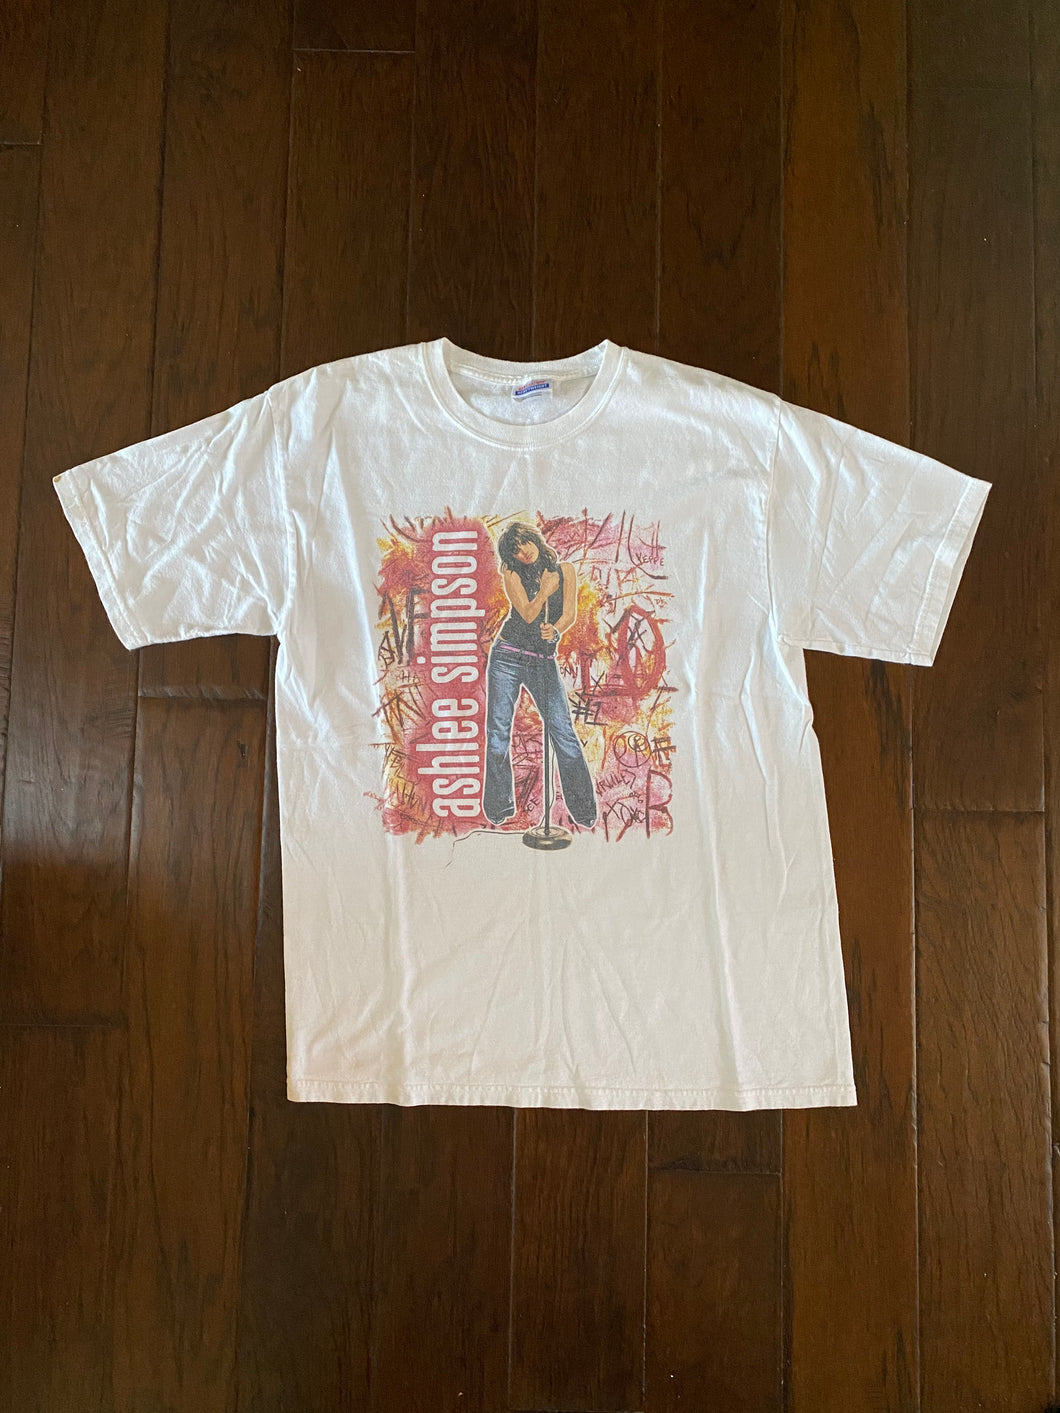 Ashlee Simpson 2004 “Autobiography Tour” Vintage Distressed T-shirt